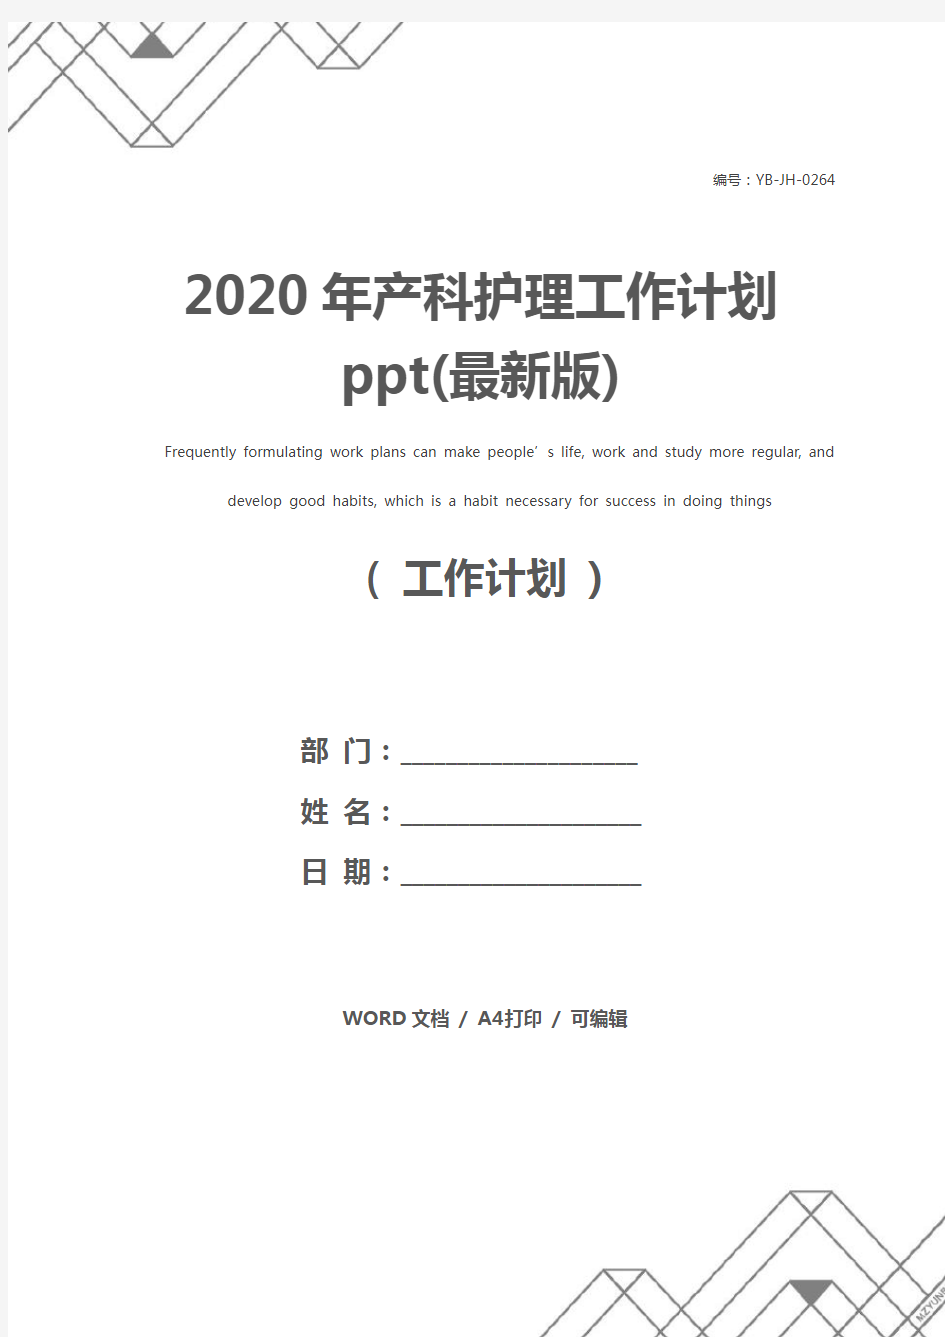 2020年产科护理工作计划ppt(最新版)